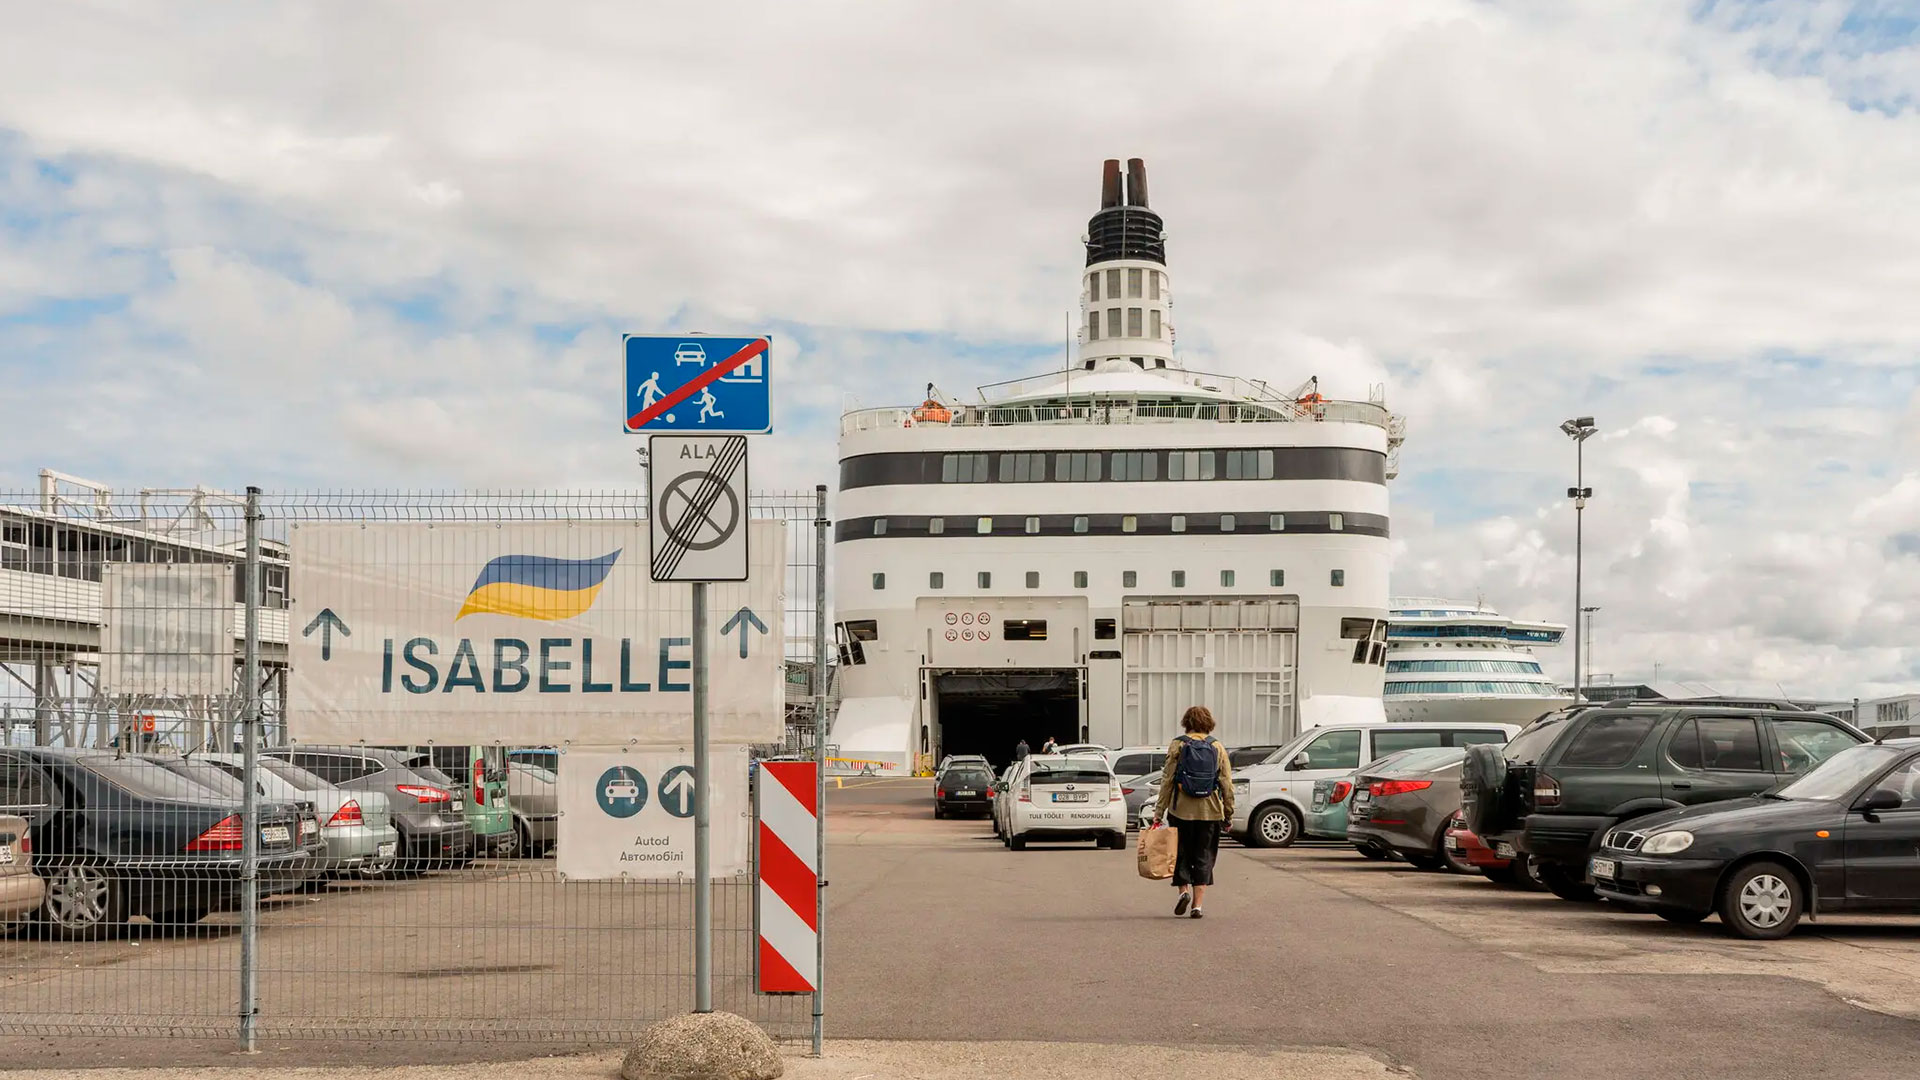 El crucero Isabelle atracó en el puerto de Tallin (Marta Giaccone para The New York Times)